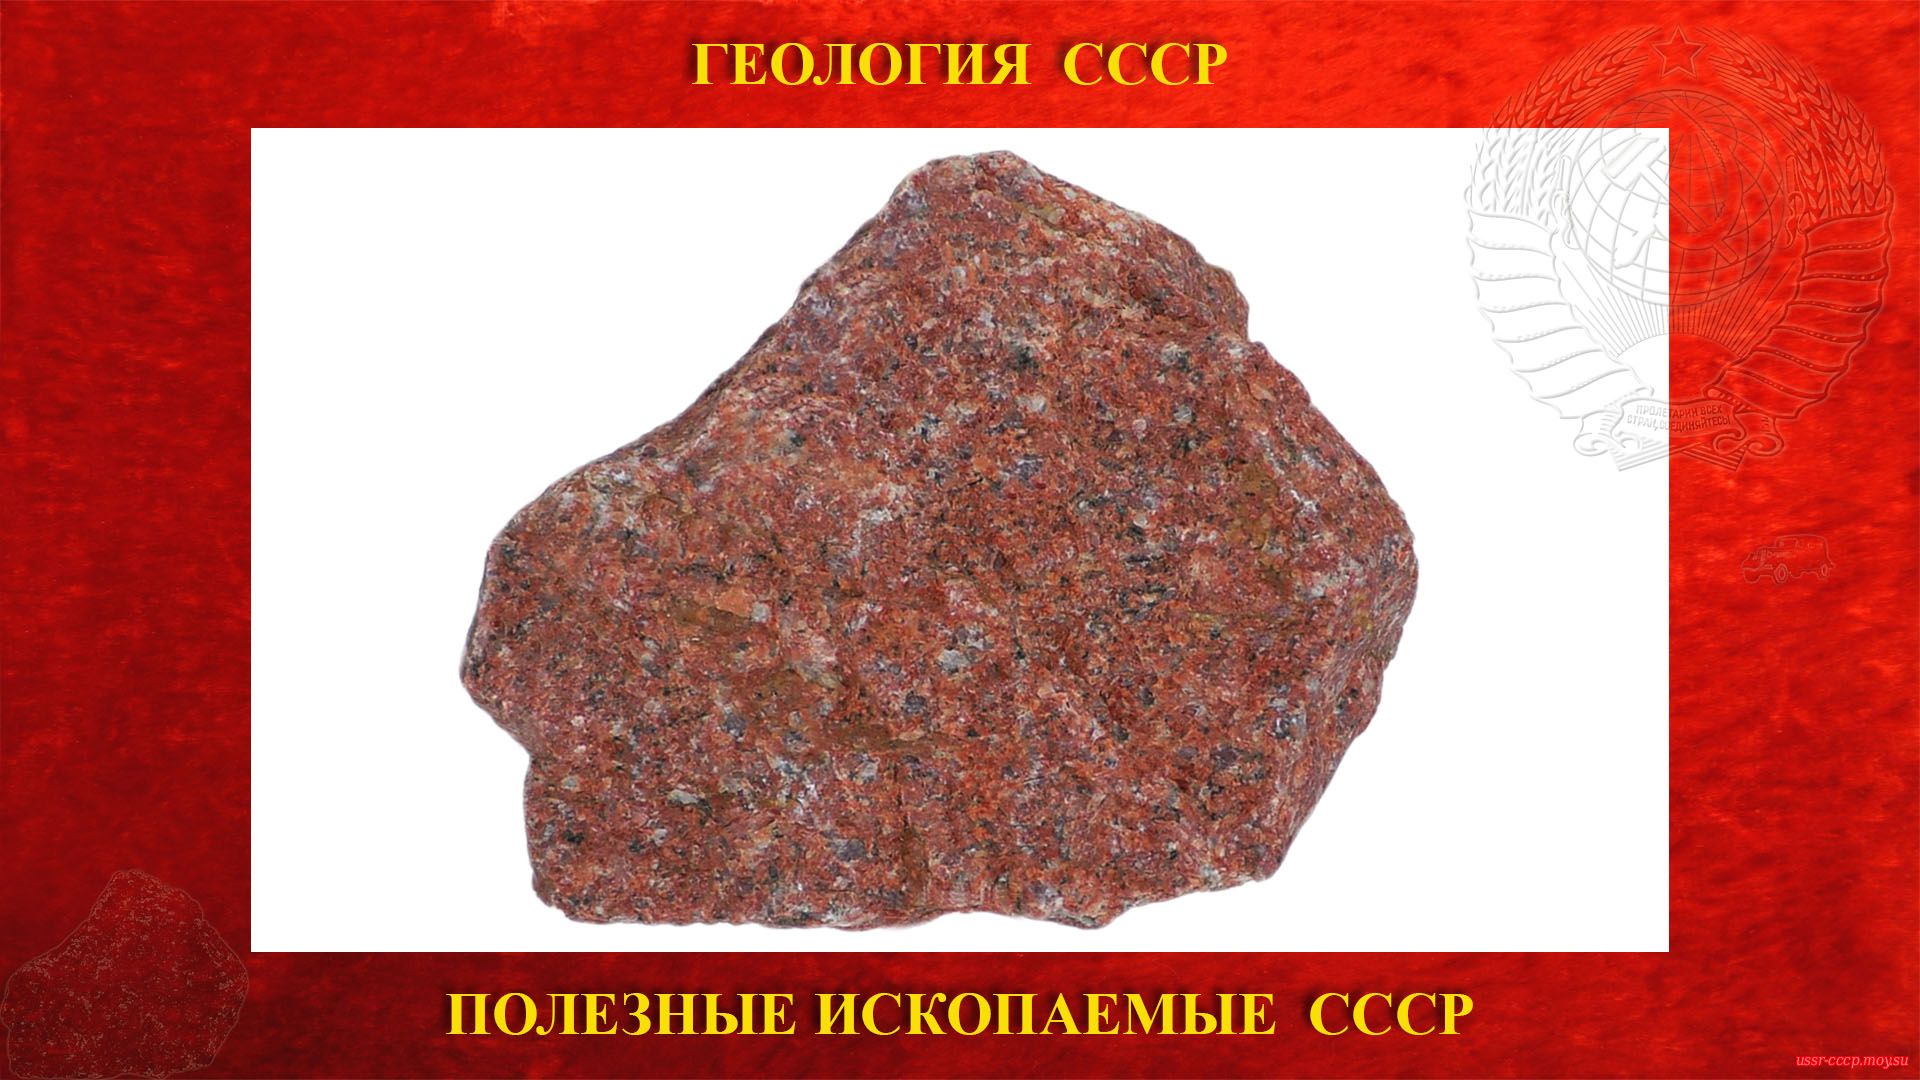 Красный гранит — Полезное ископаемое СССР